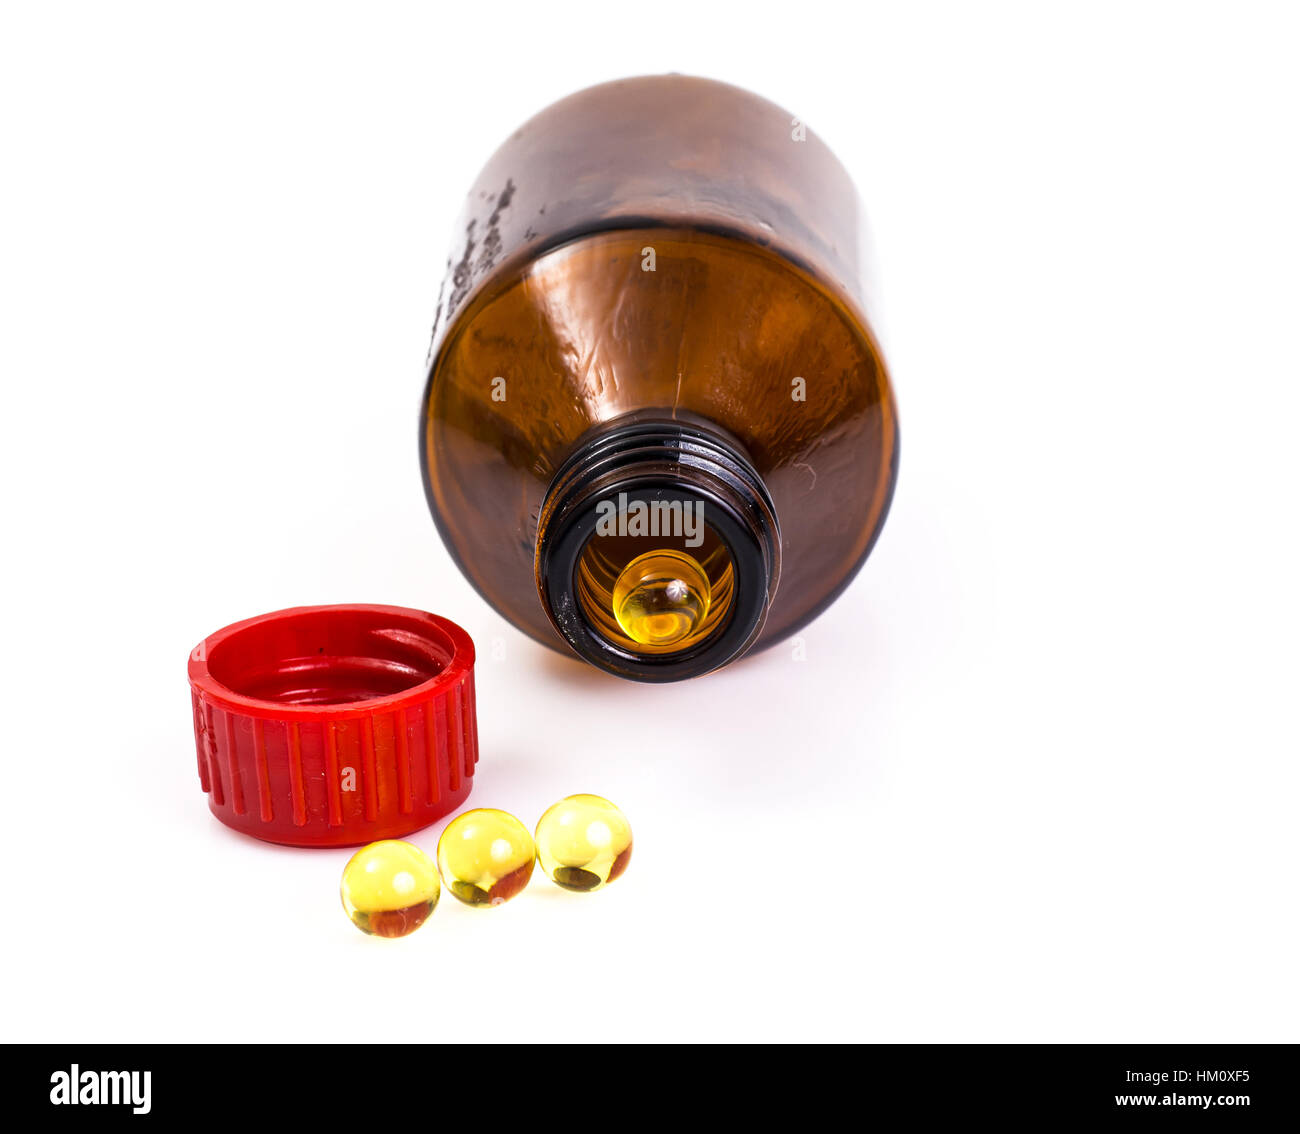 Drogerie Vitamine: Runde Gelatinekapseln in einer Flasche dunkel g Stockfoto